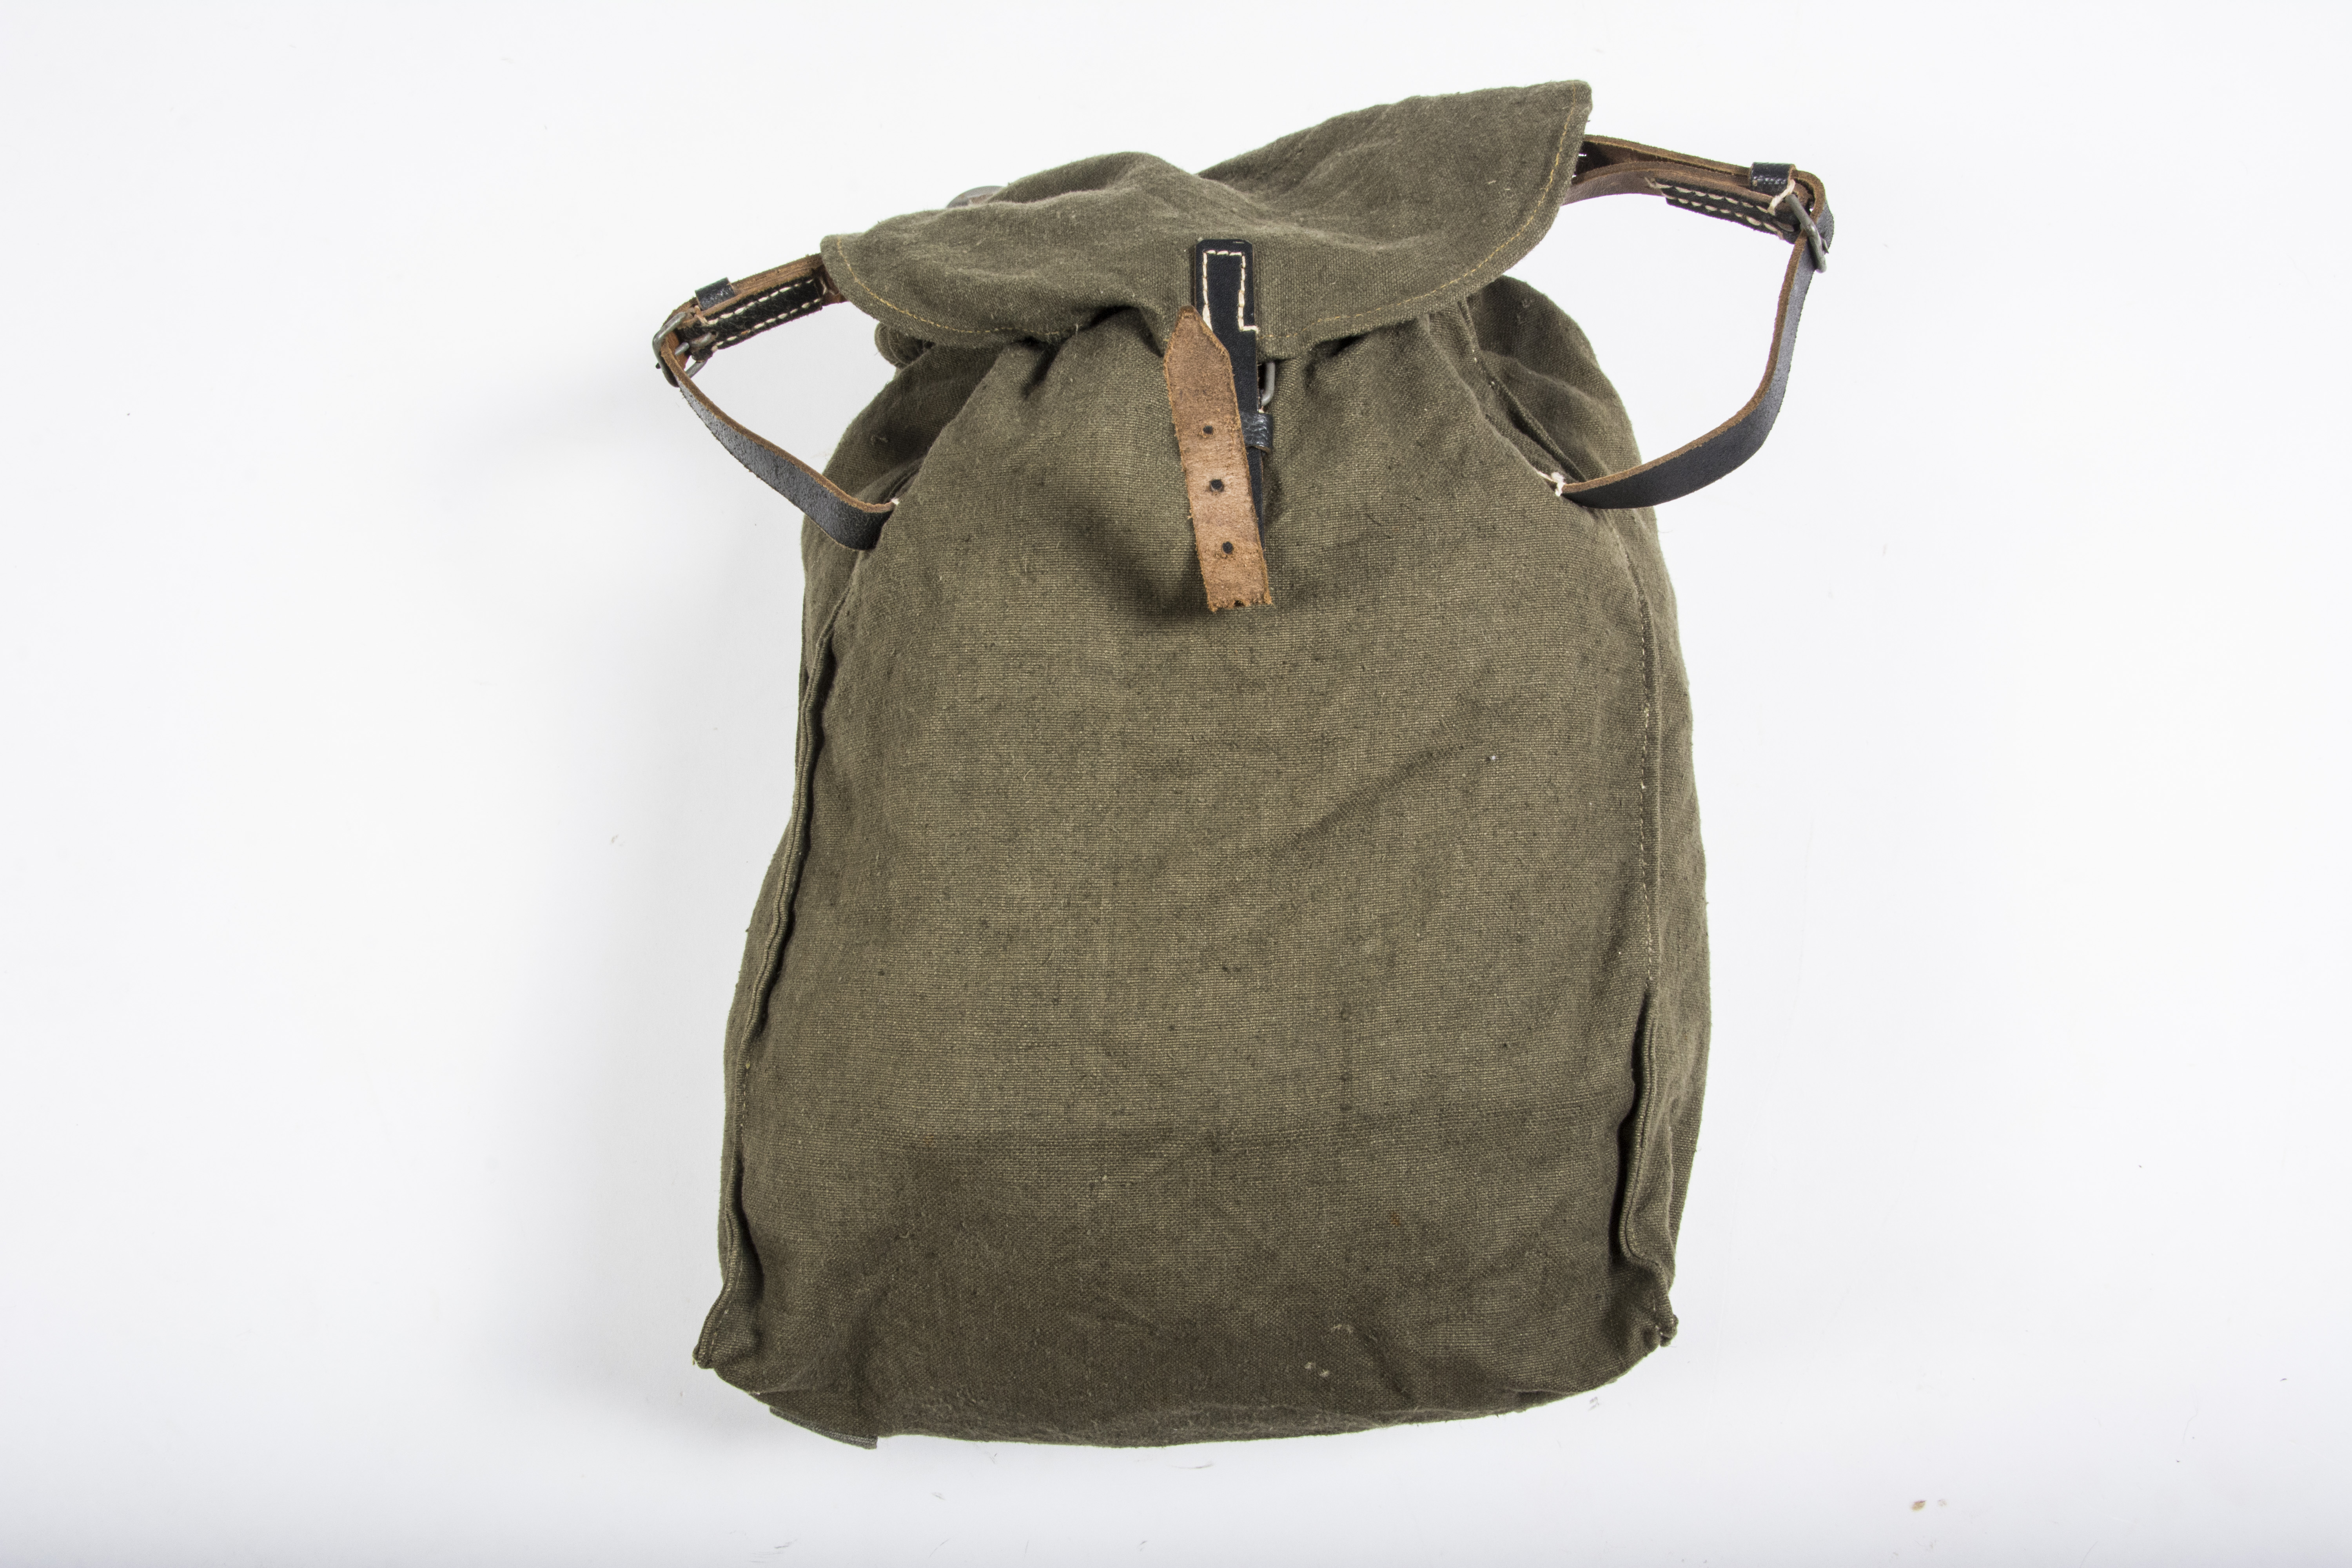 Late war Heer/Waffen-SS M44 rucksack – fjm44